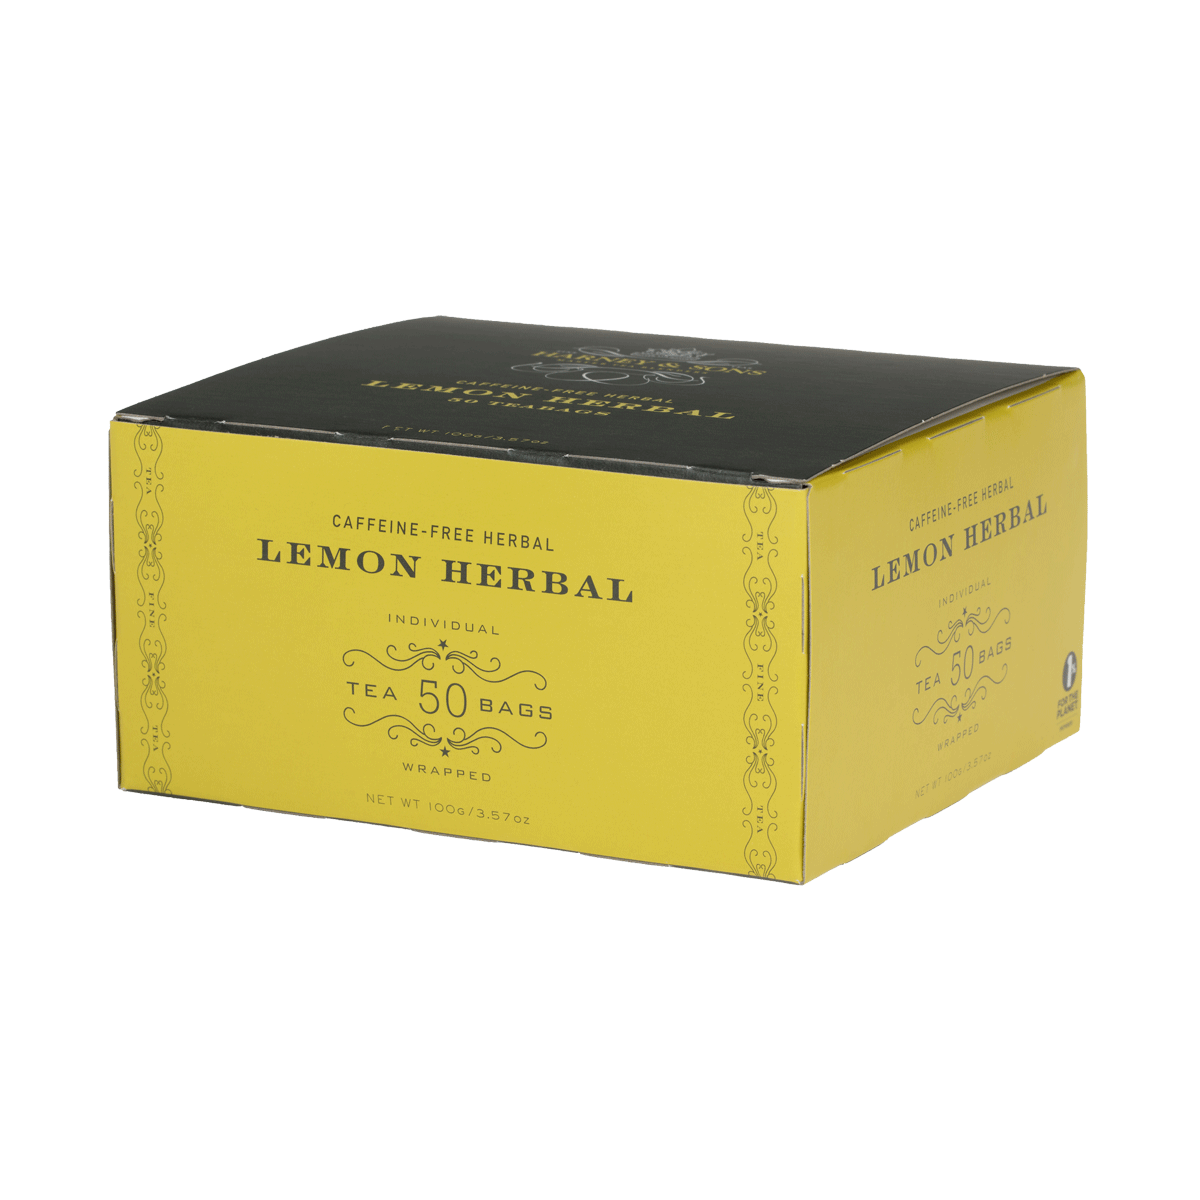 Lemon Herbal - Harney & Sons Teas, European Distribution Center